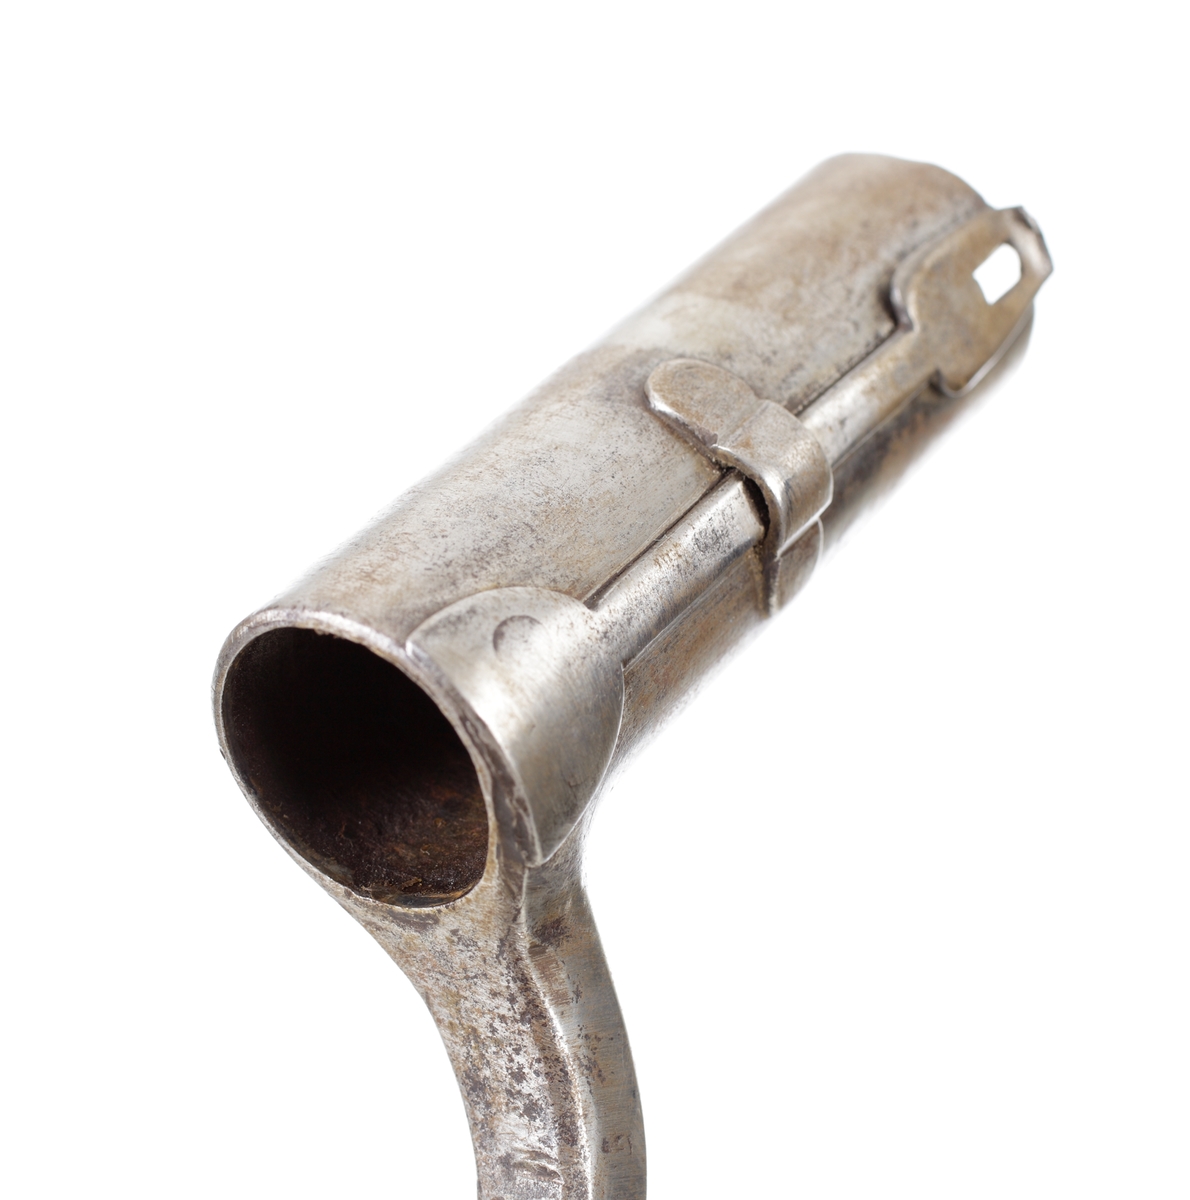 Hylsbajonett med eneggat knivblad. Bajonettarmen har en fyrkantig genomskärning med avfasade hörn. Bajonetten låses med en fjäderbelastad hake om pipans bajonettklack. Klackgången är kort och dold av låshaken.
Inskrivet i huvudkatalog 1868.